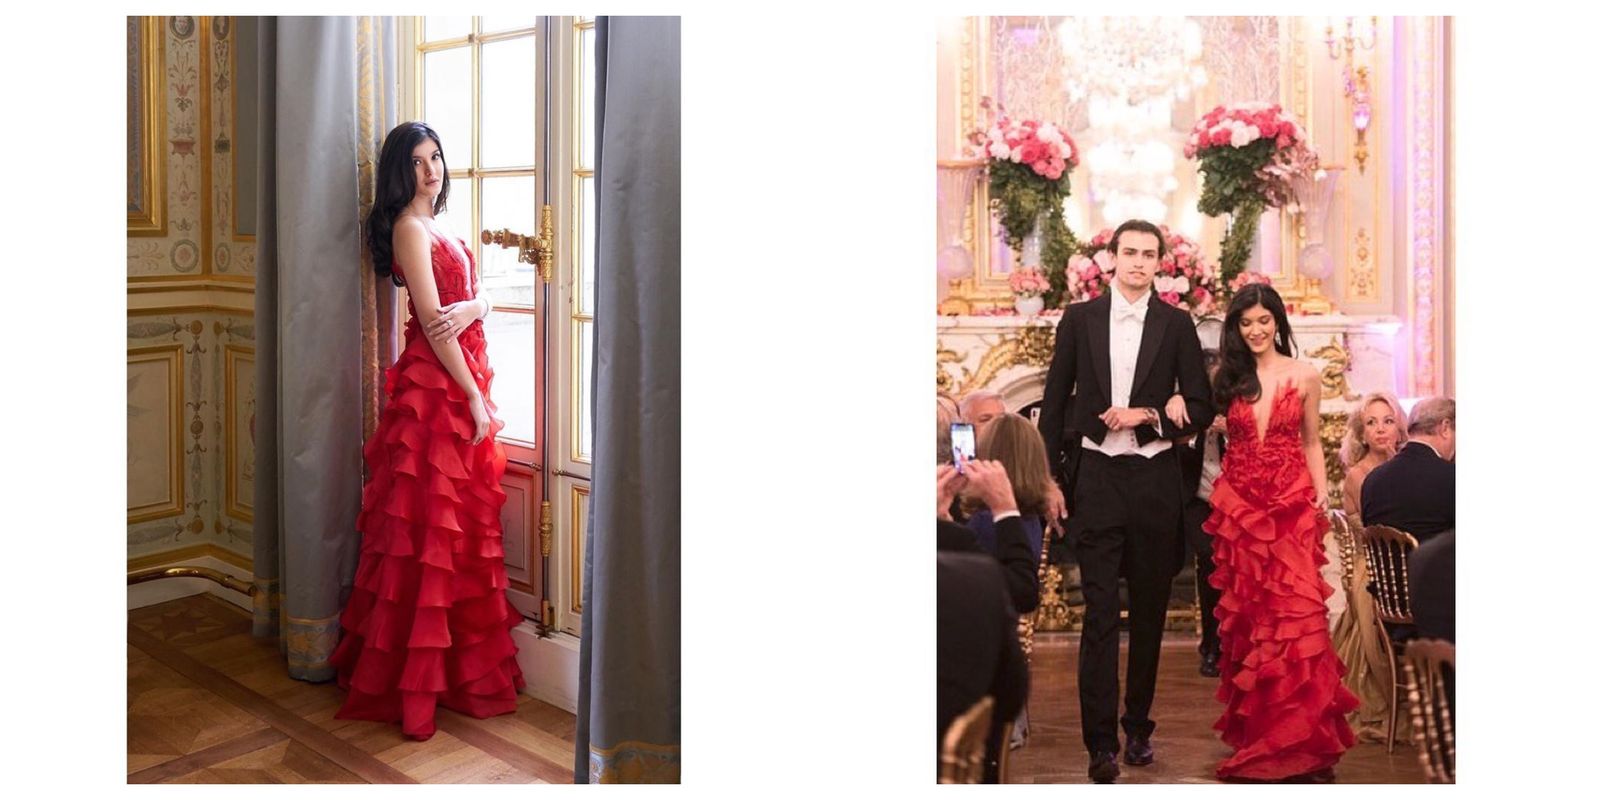 Shanaya Kapoor Makes Her Society Debut At The Prestigious Paris Ball